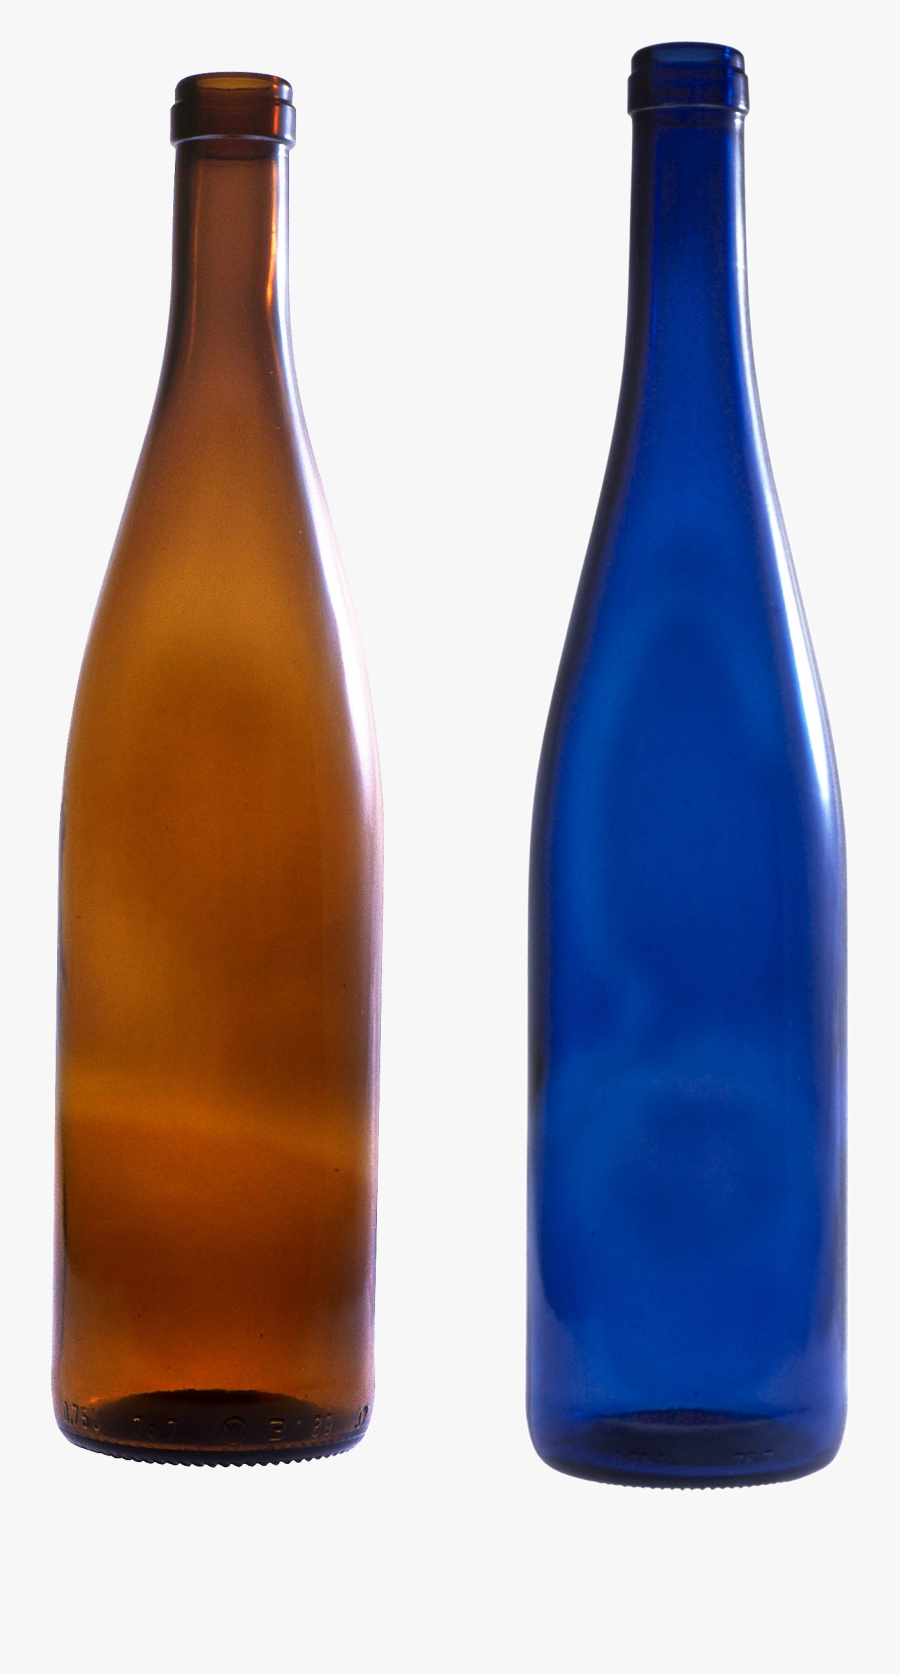 Glass Bottle Png Image - Bottles Png, Transparent Clipart